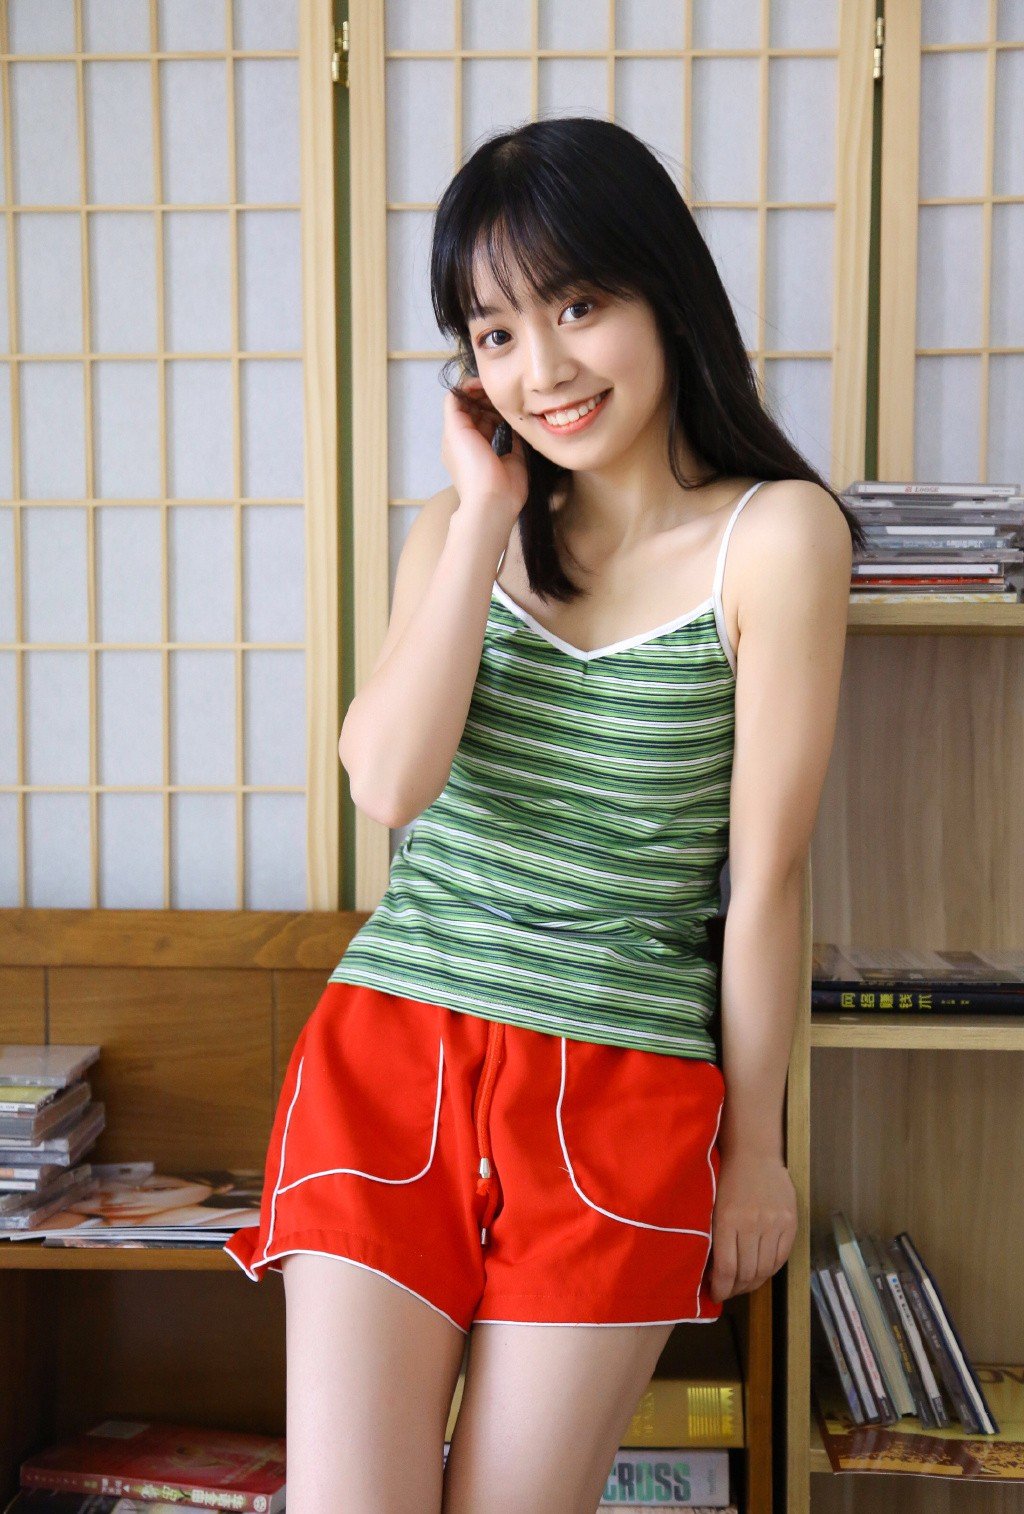 日系美女吊带长腿诱人性感美女写真图片